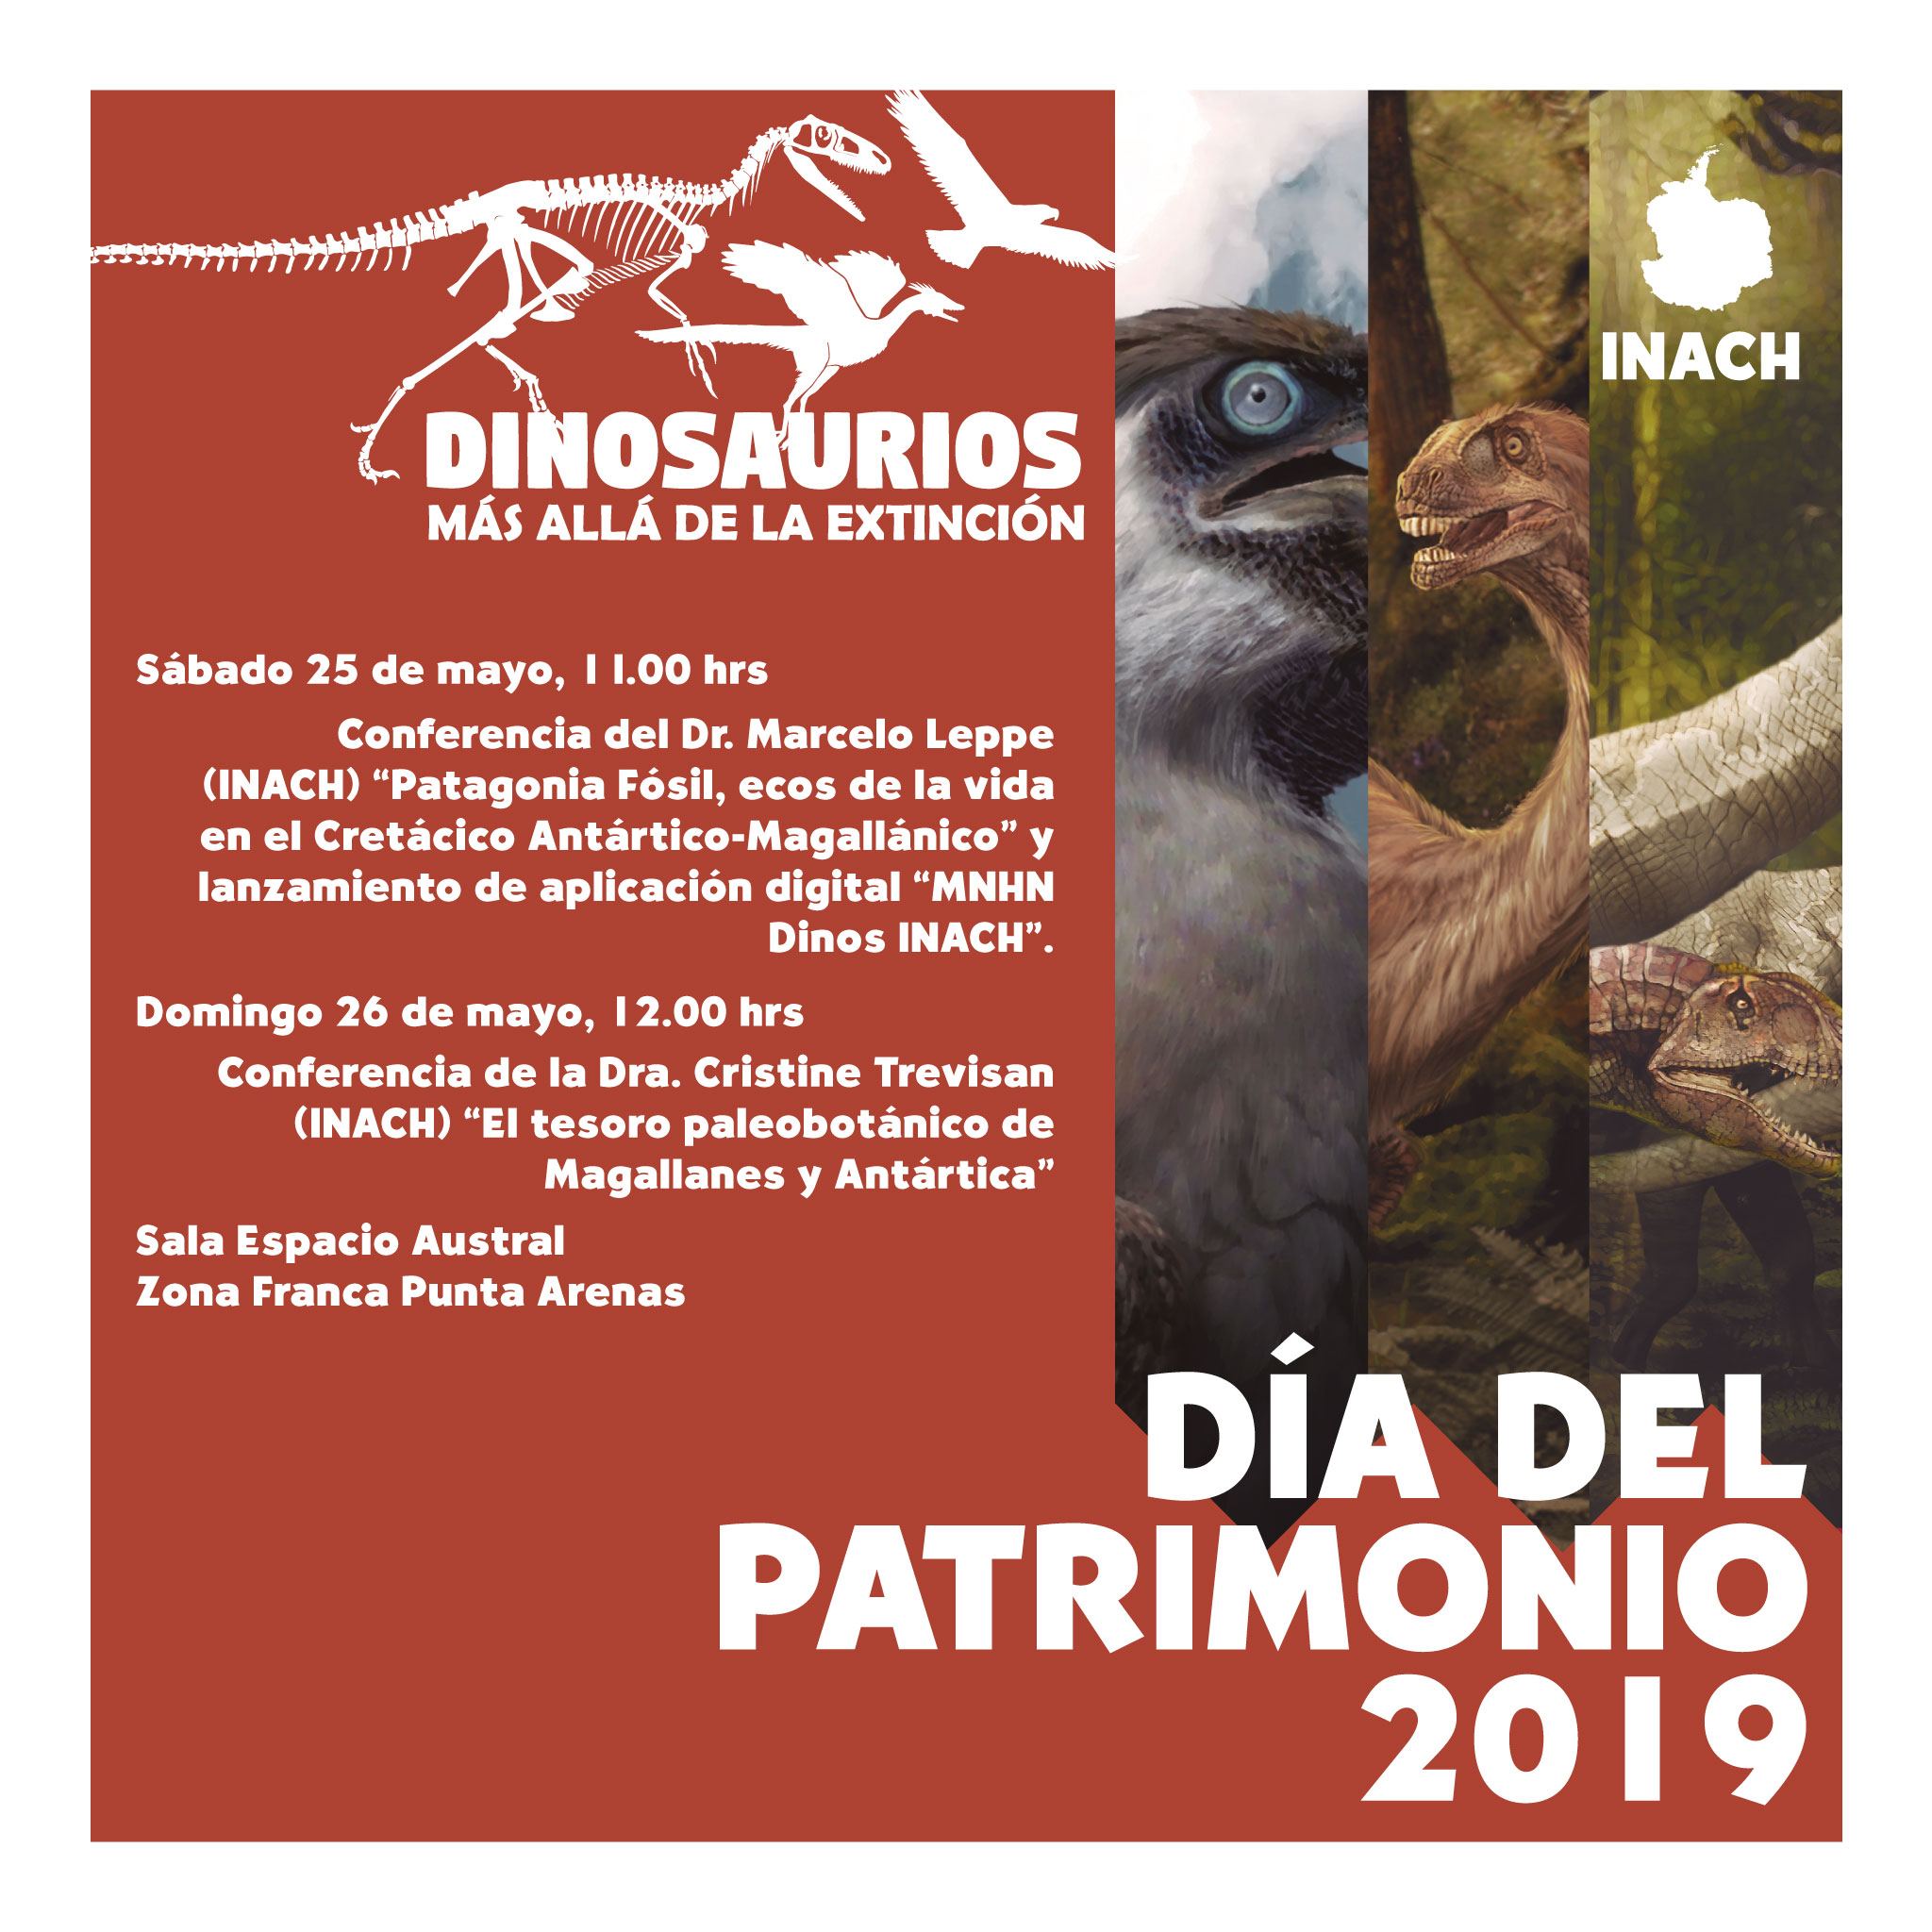 INACH invita a participar Día del Patrimonio 2019 el sábado 25 y domingo 26 de mayo en Punta Arenas